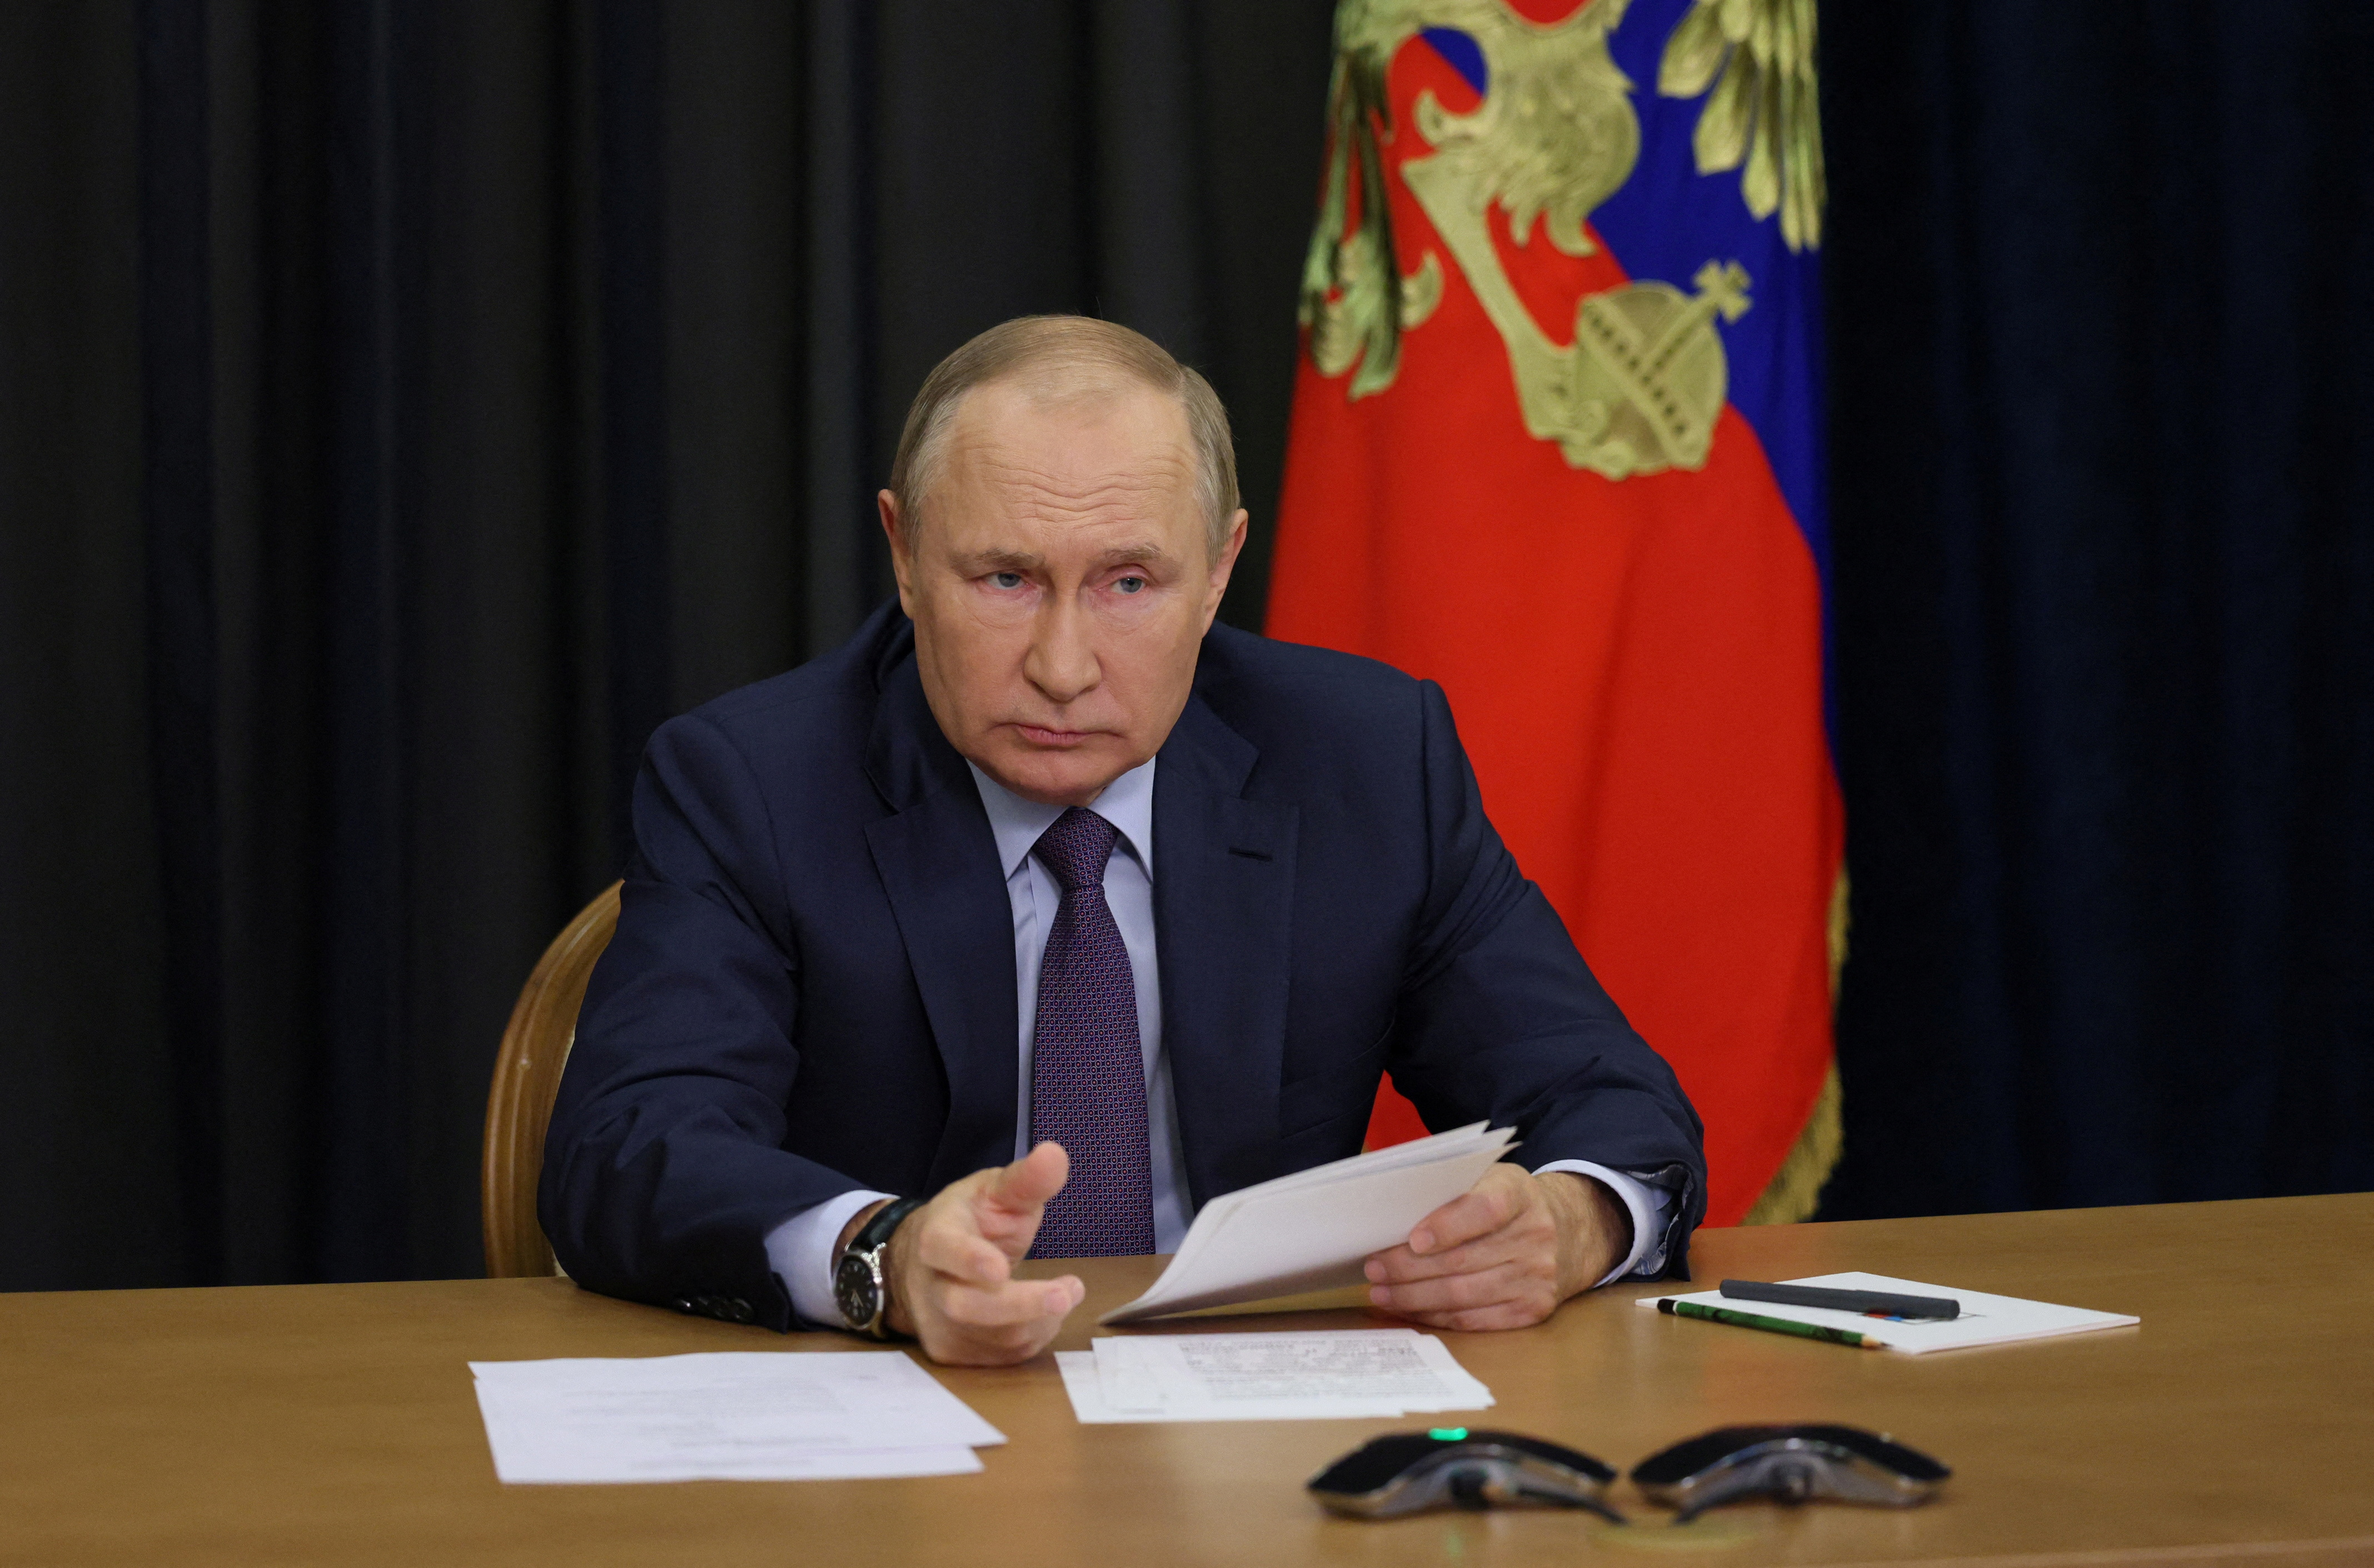 El presidente ruso, Vladímir Putin, preside una reunión sobre temas de agricultura a través de una videoconferencia en Sochi, Rusia, el 27 de septiembre de 2022. Sputnik/Gavriil Grigorov/Pool vía REUTERS